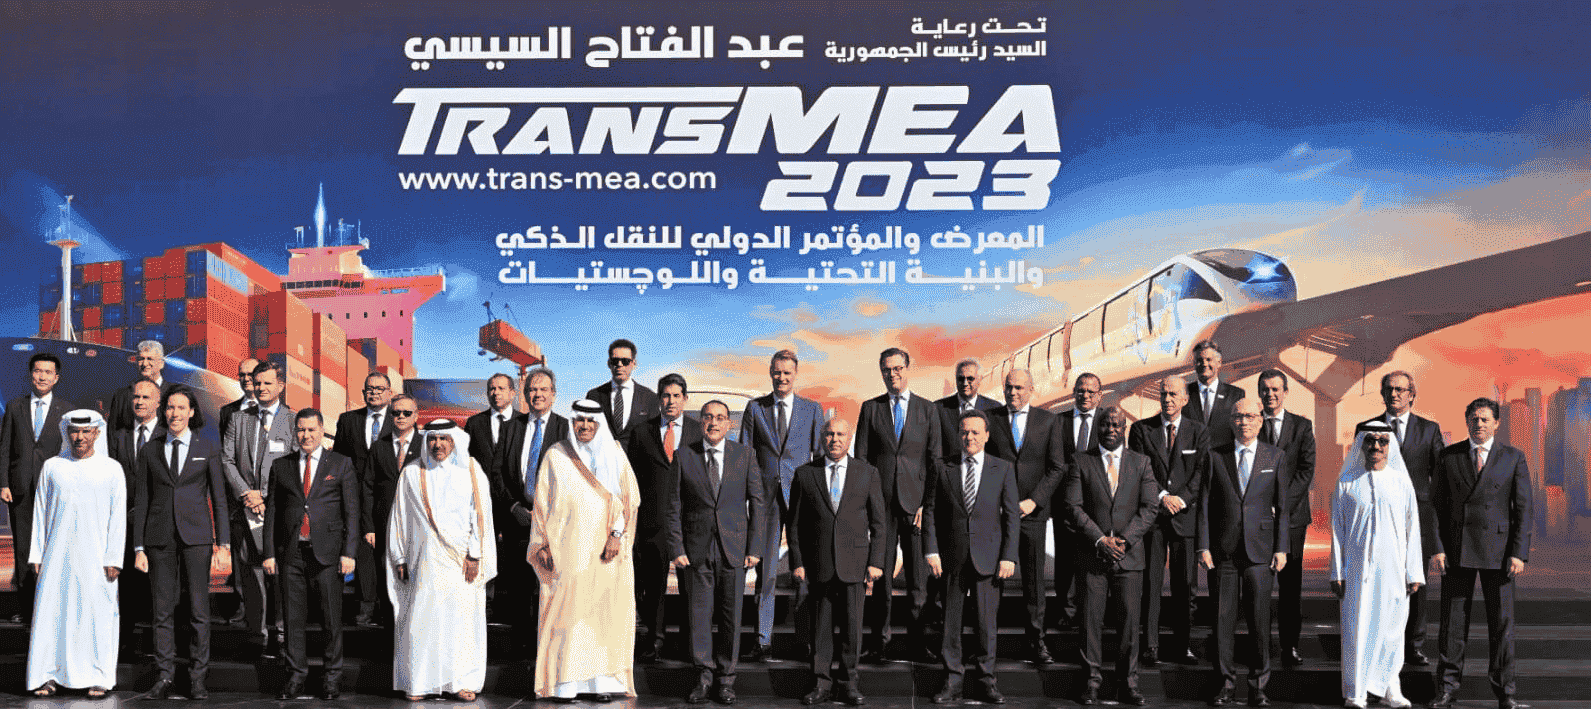 Egypt inaugurates TransMEA2023

